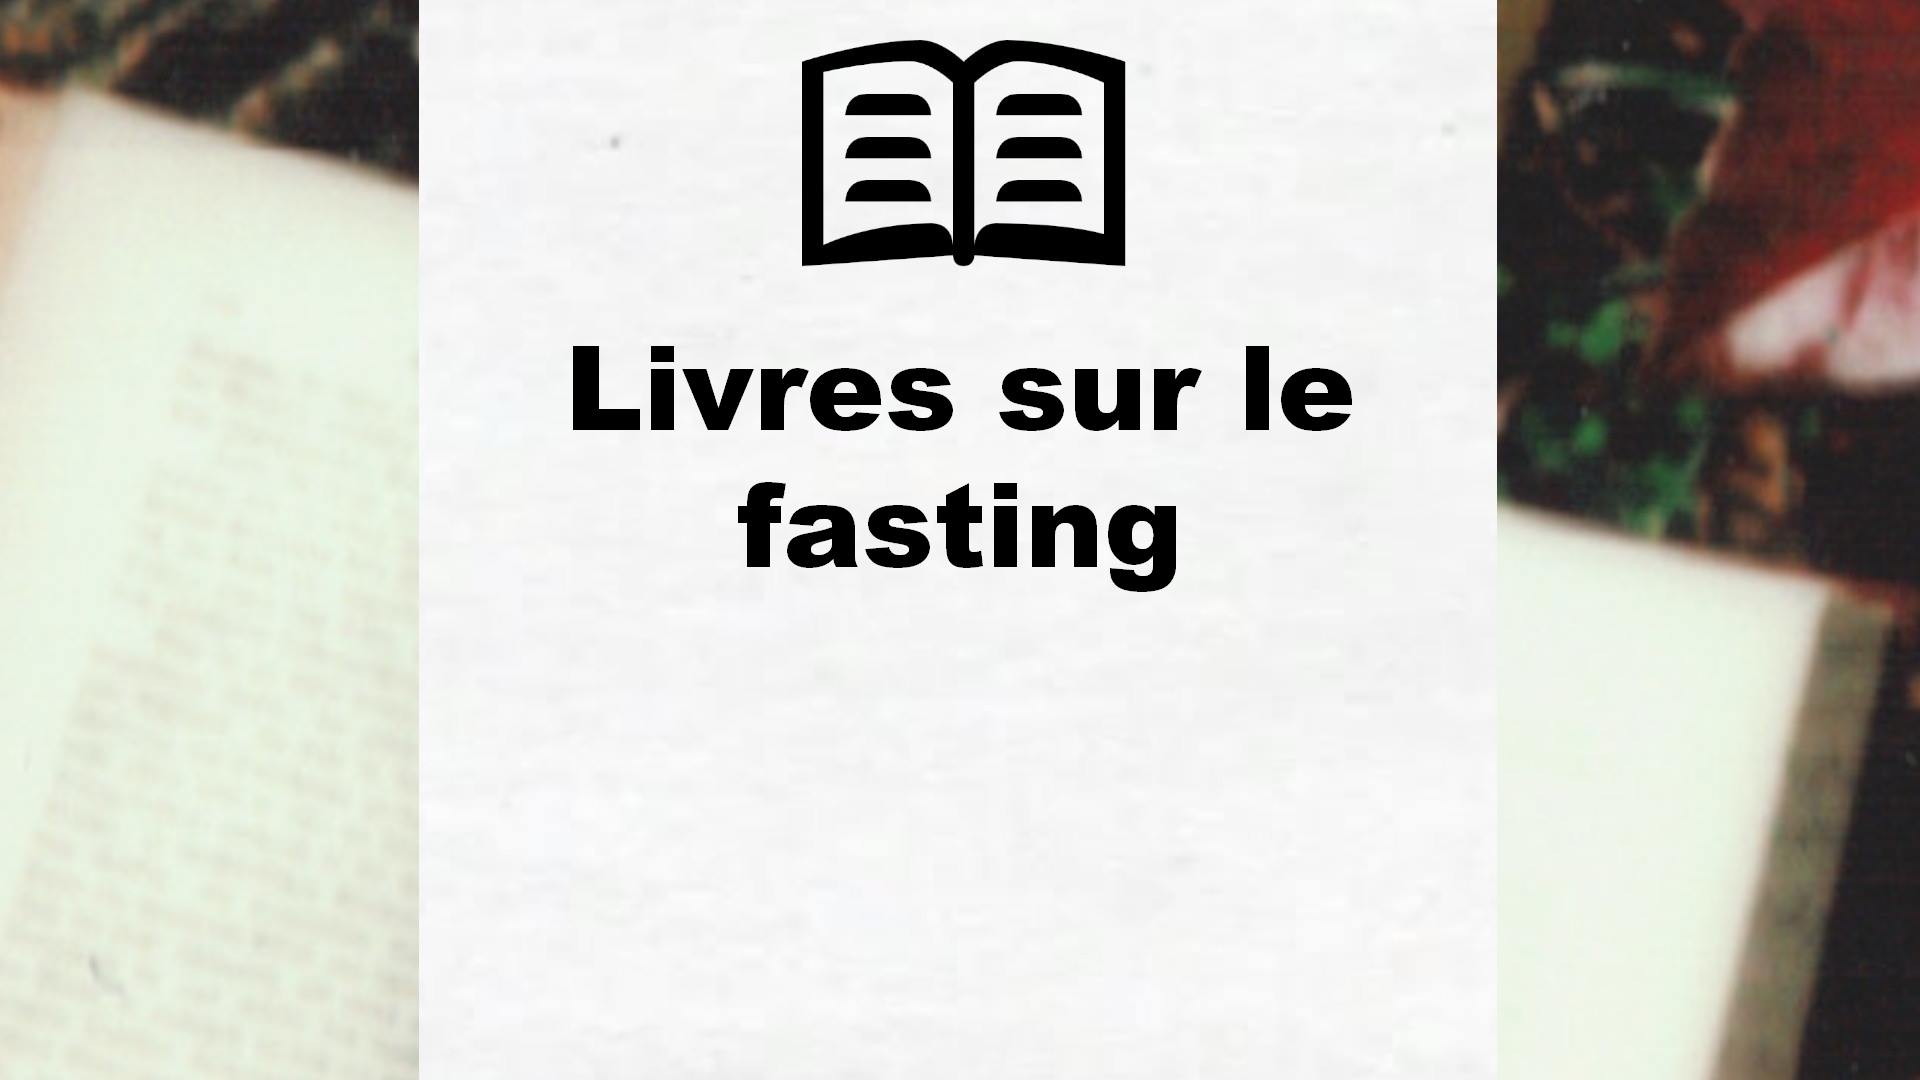 Livres sur le fasting